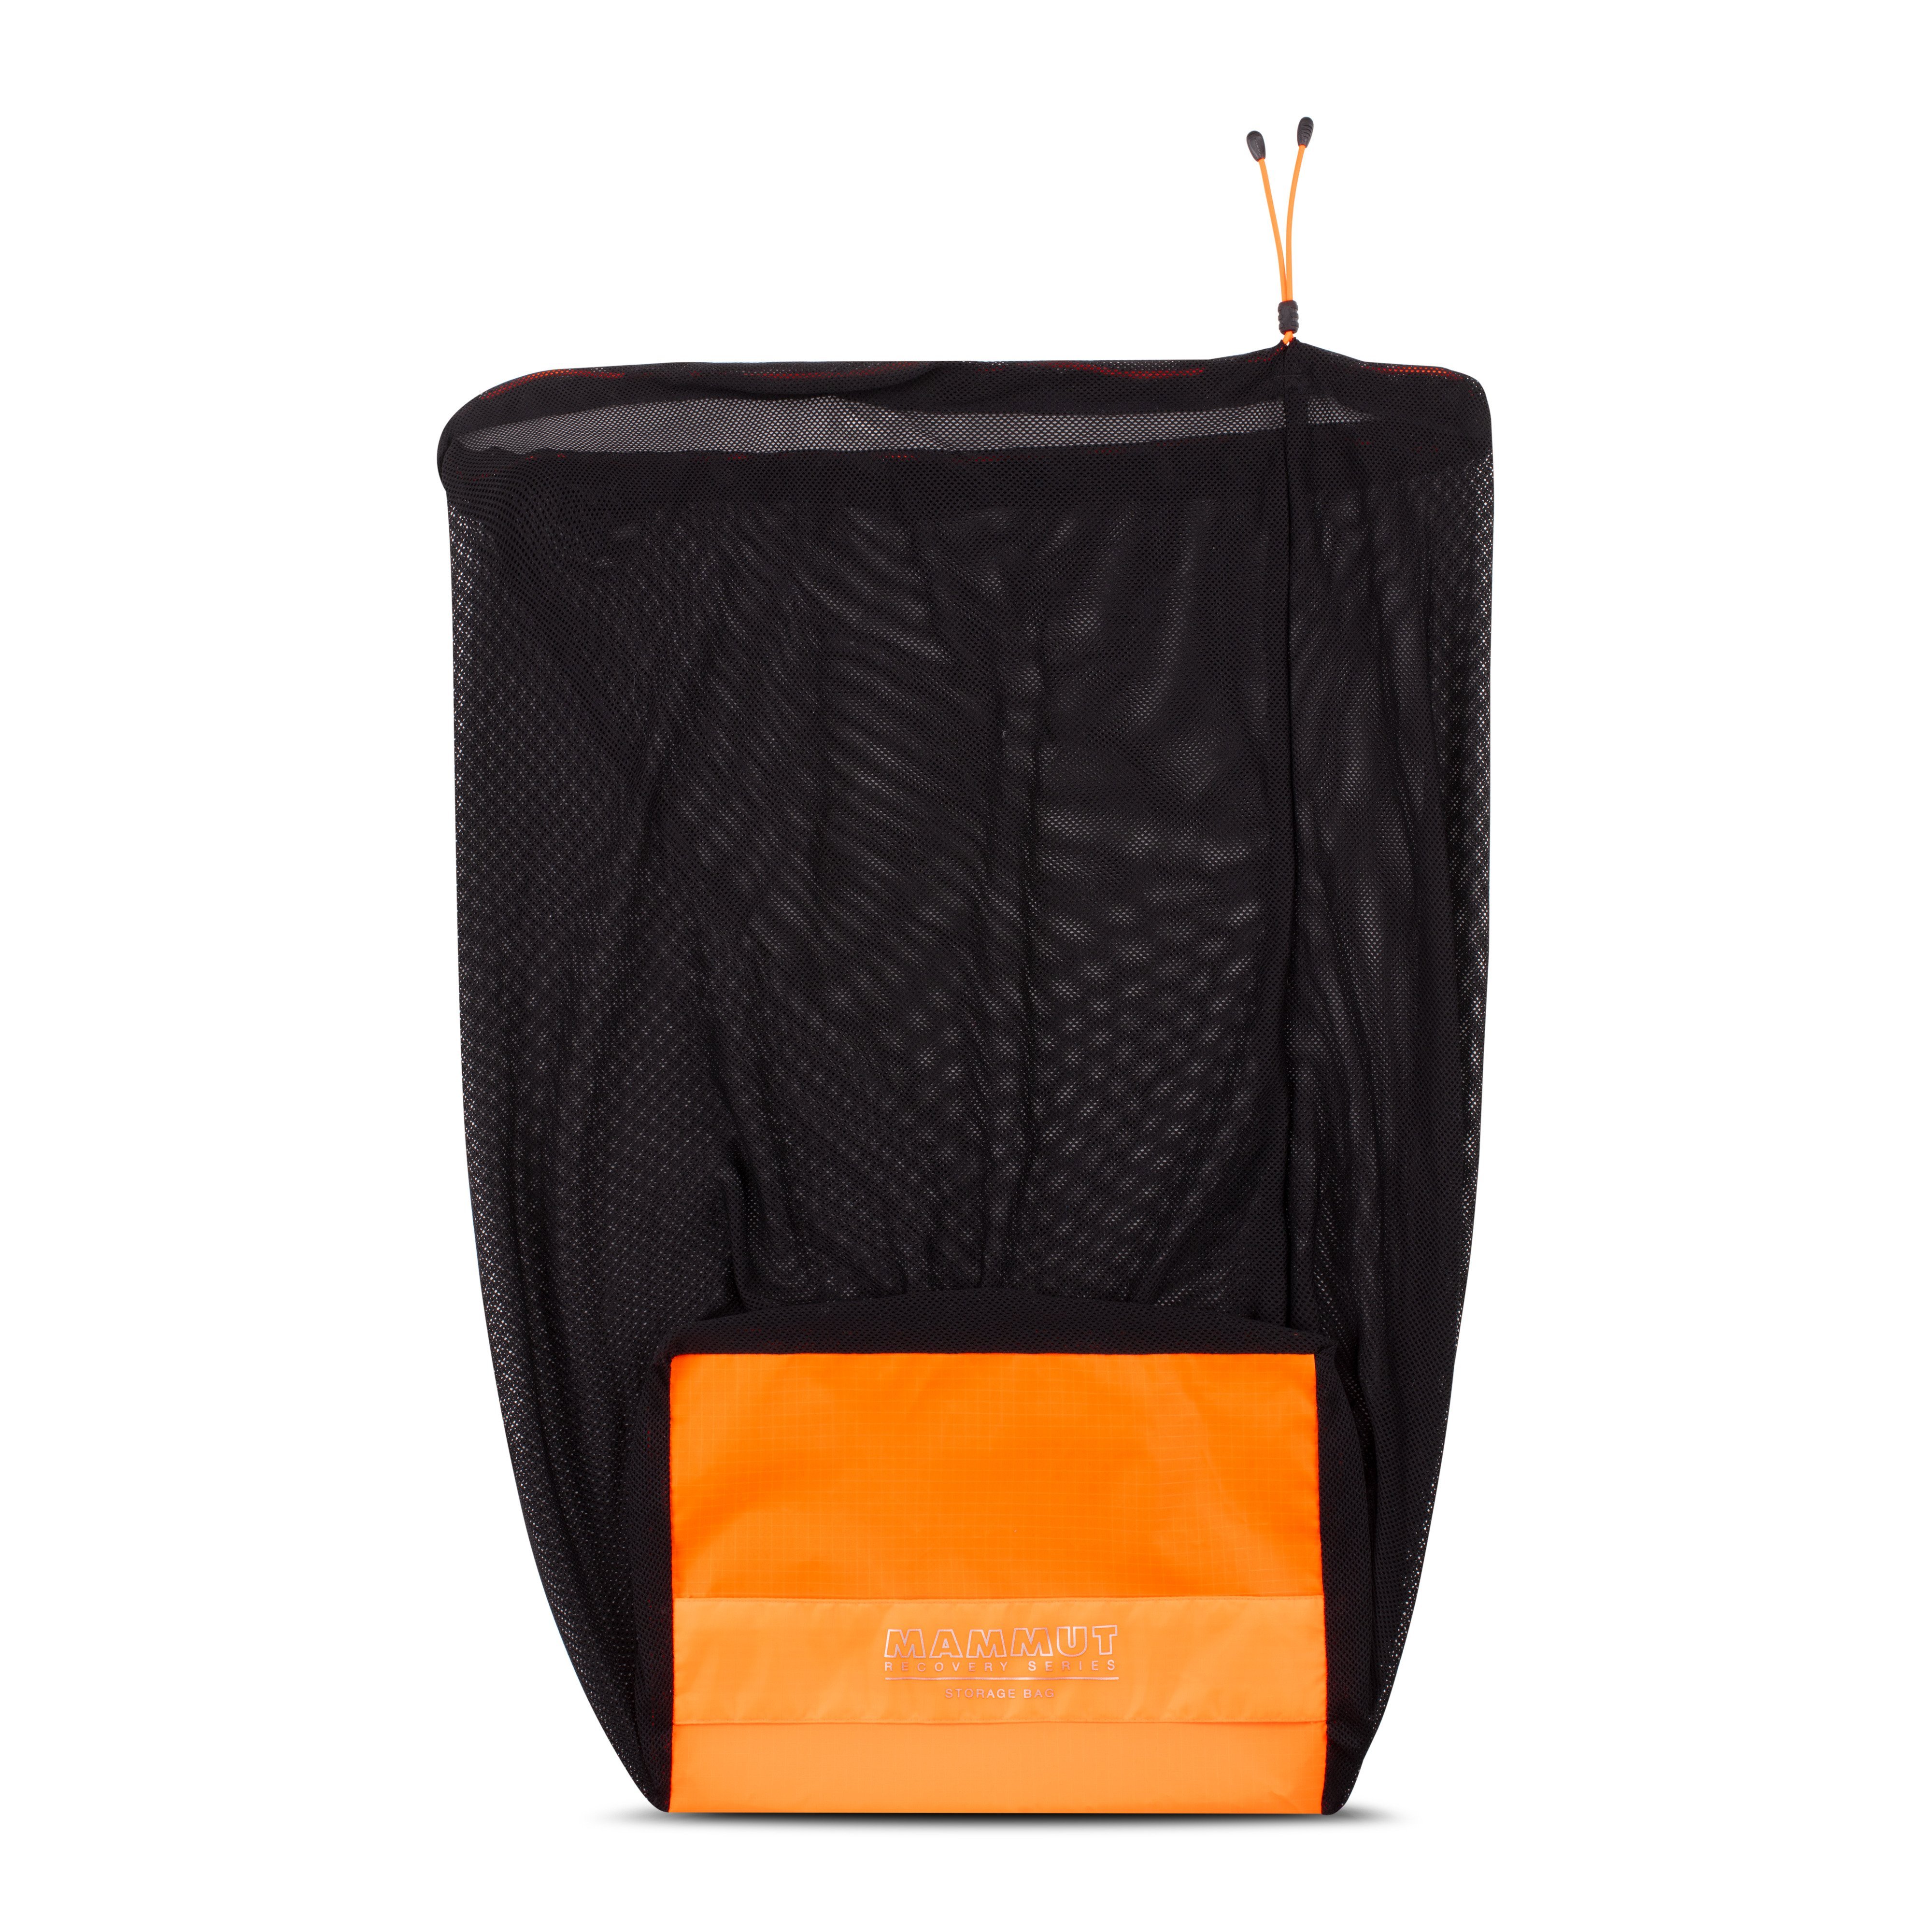 Storage Bag - vibrant orange, one size product image